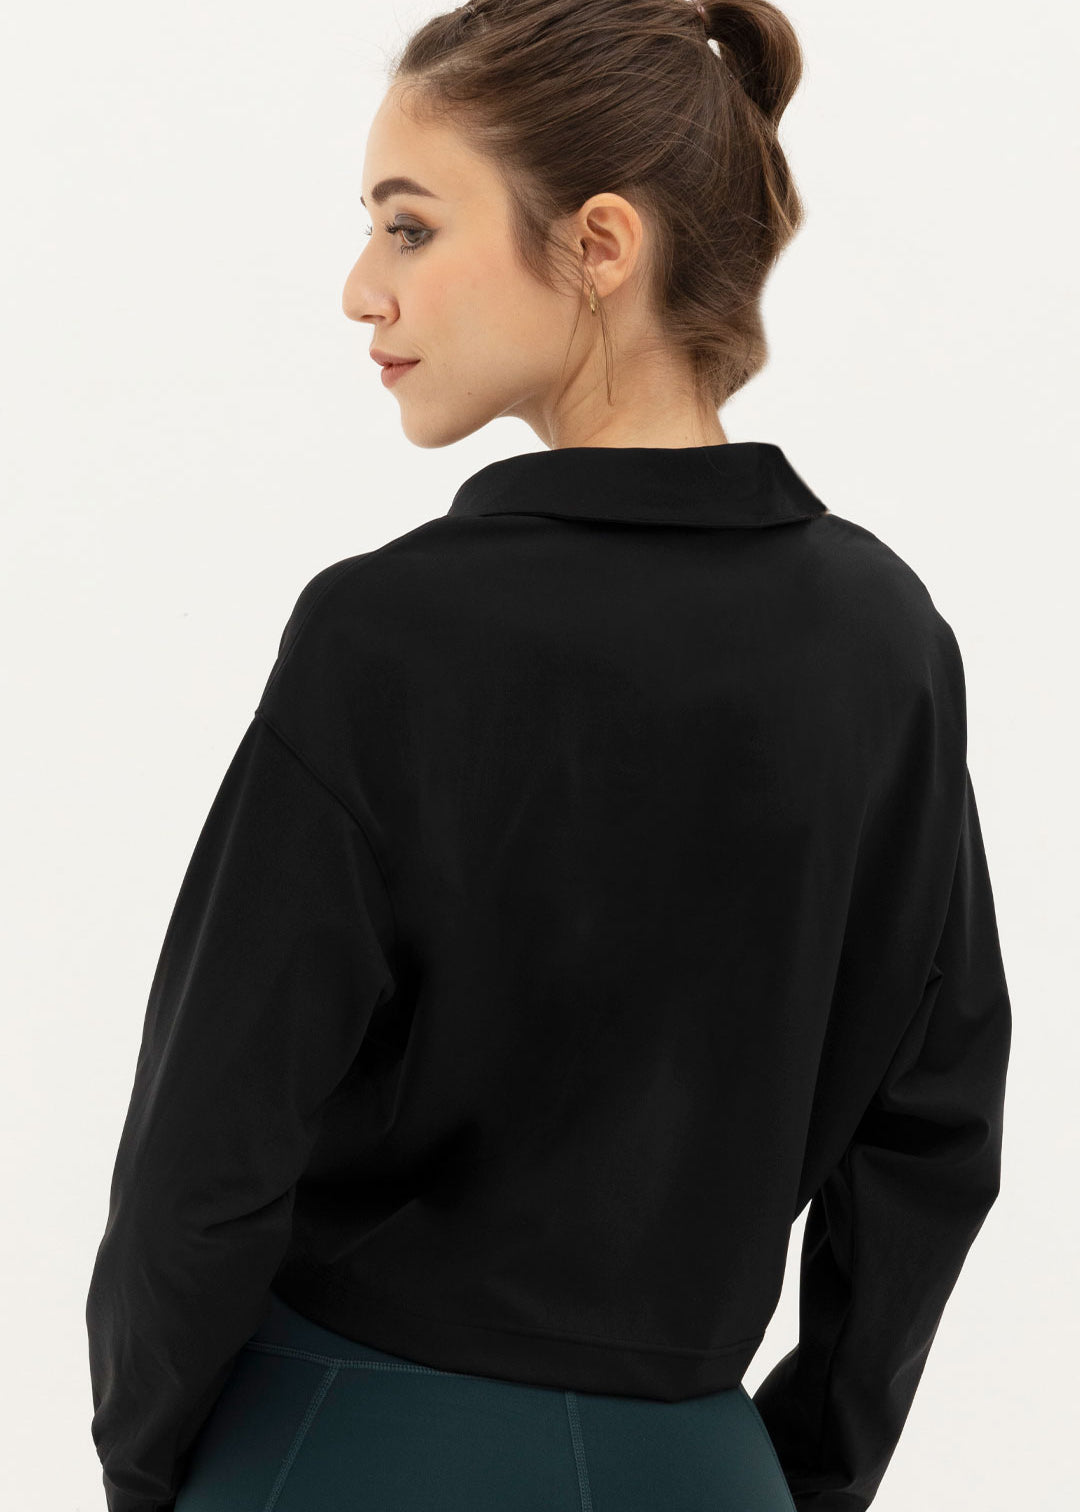 grand-slam-pullover-black-2.jpg